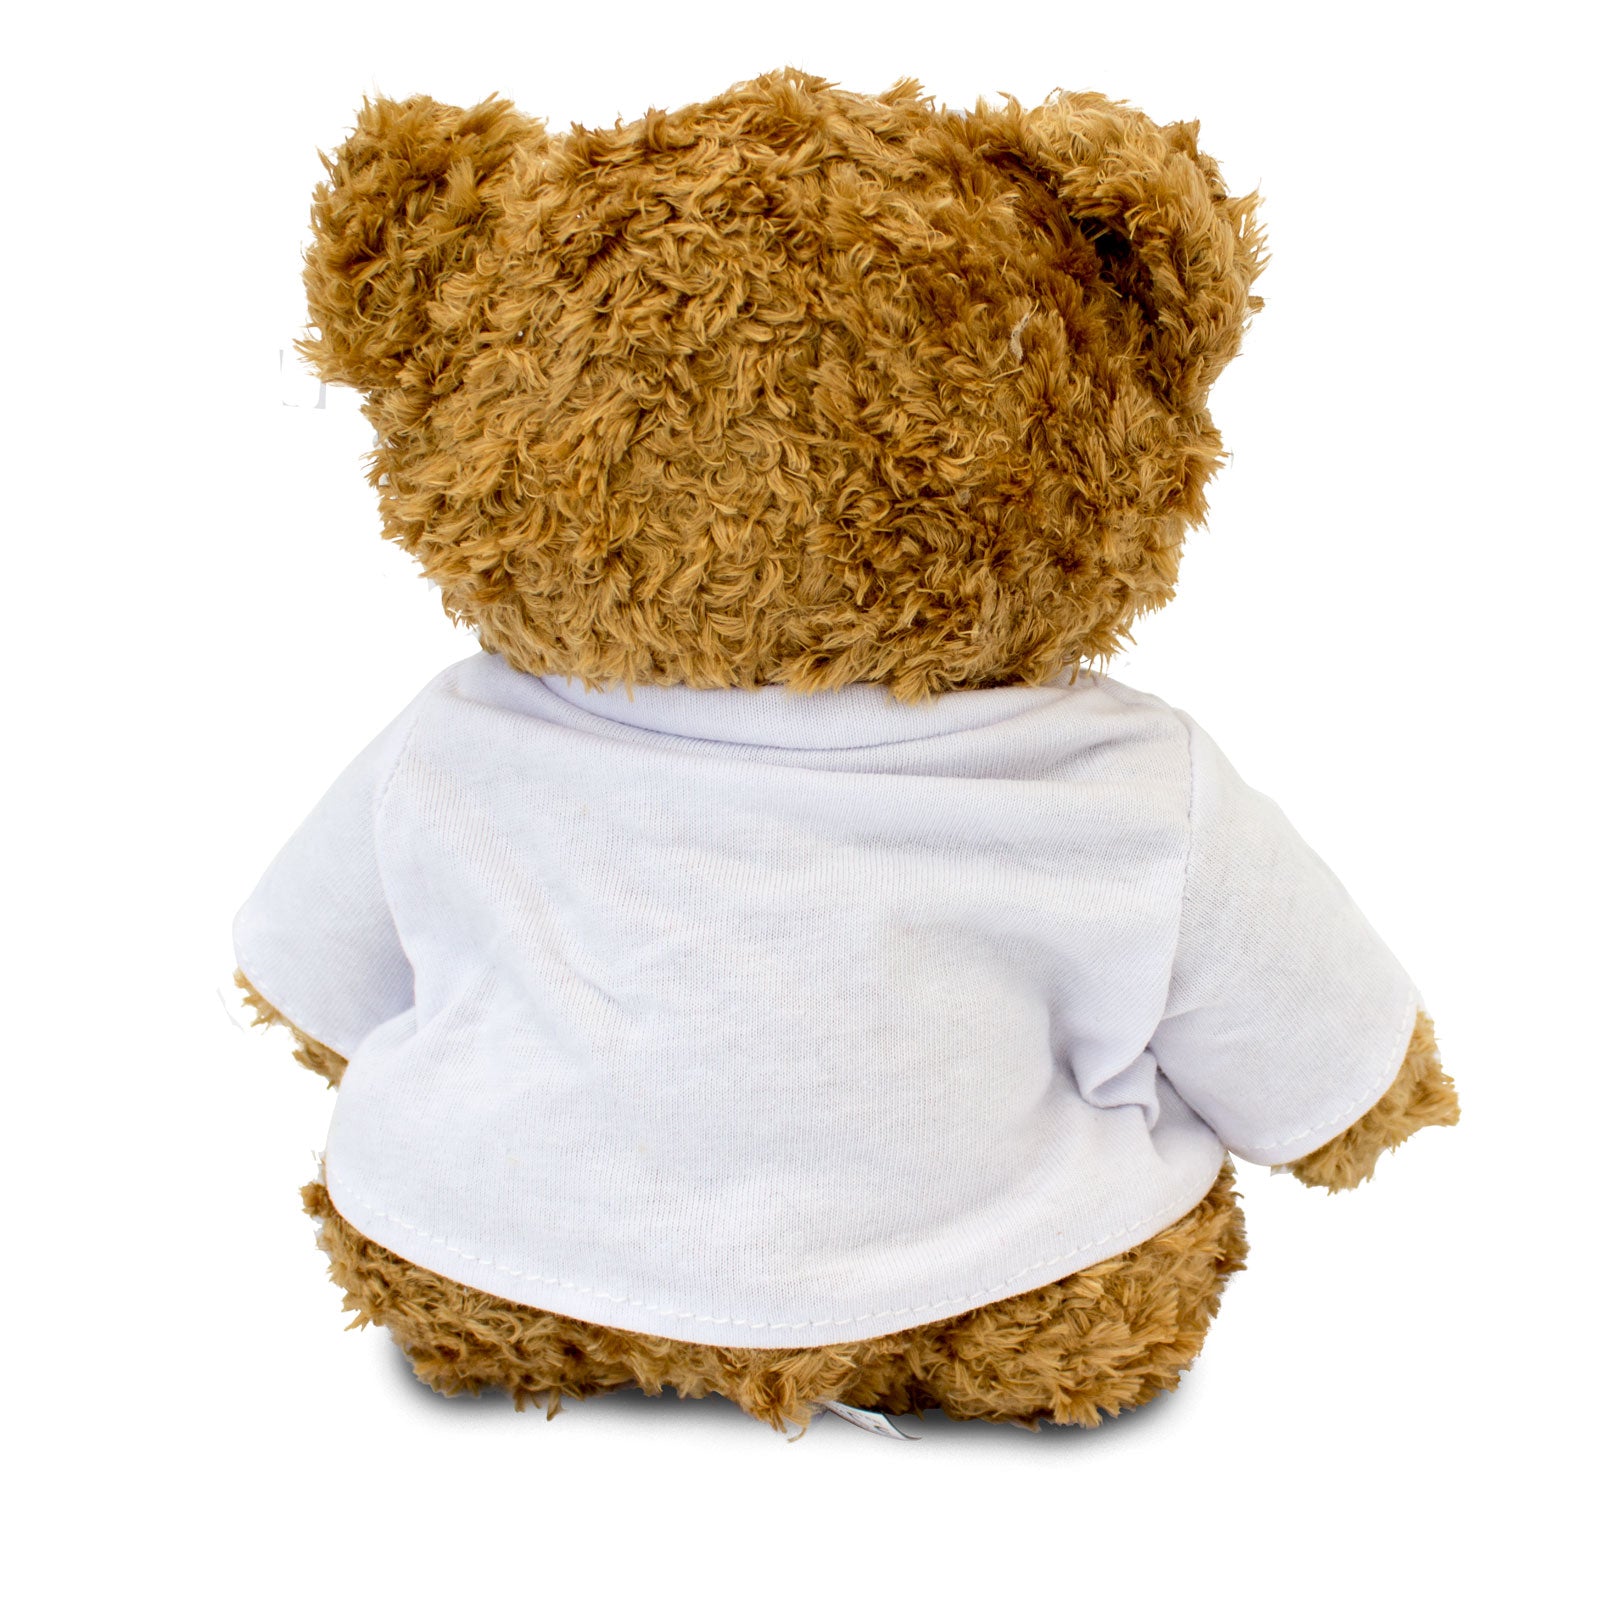 I Love Claire - Teddy Bear